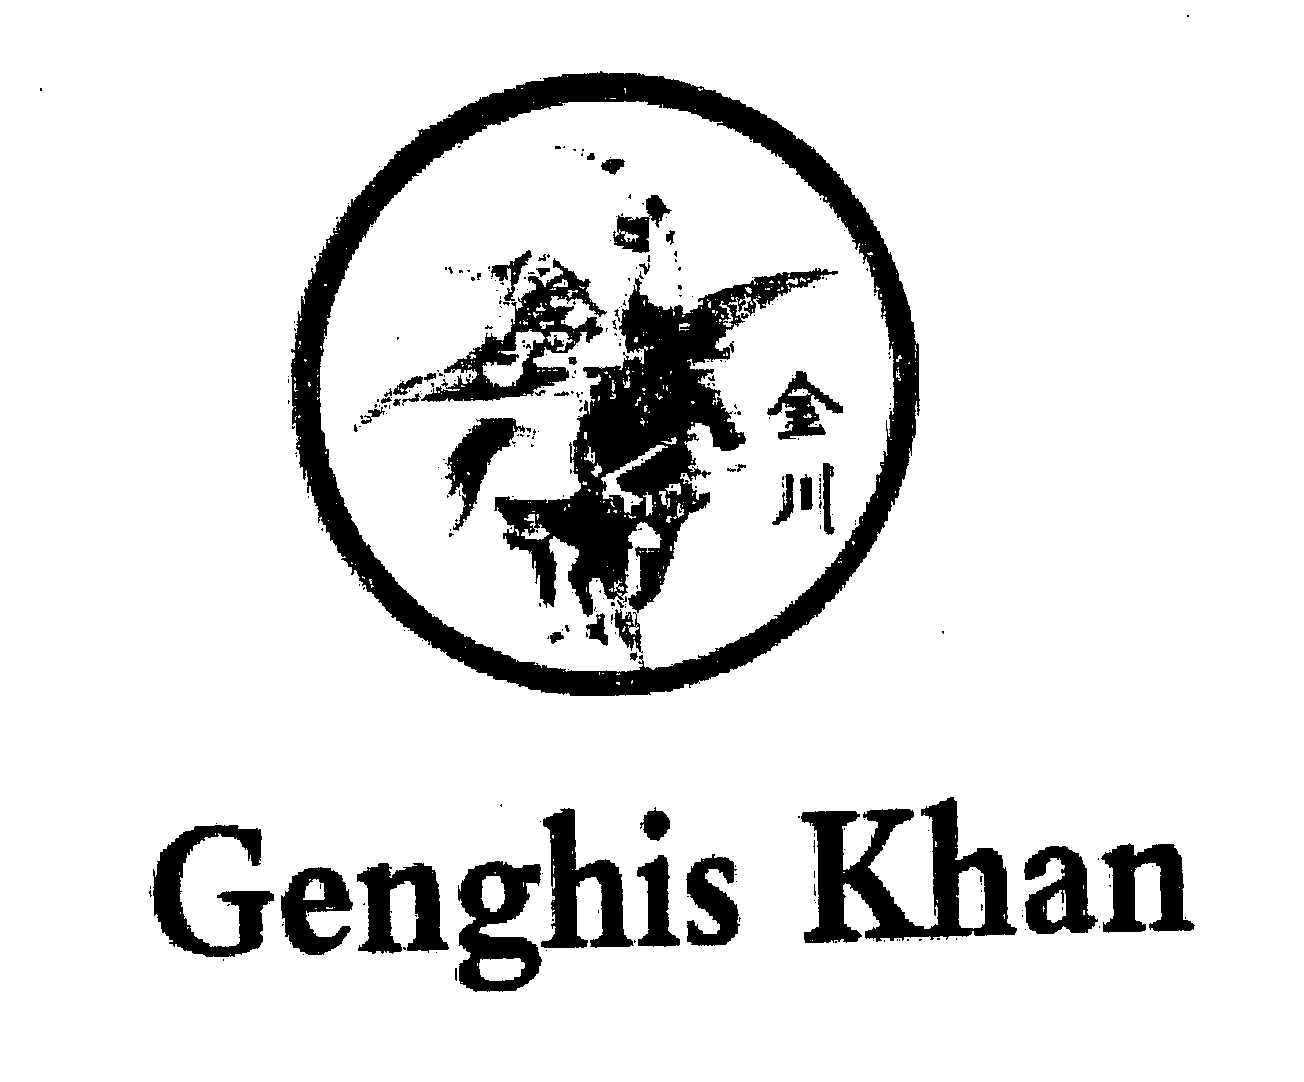 GENGHIS KHAN